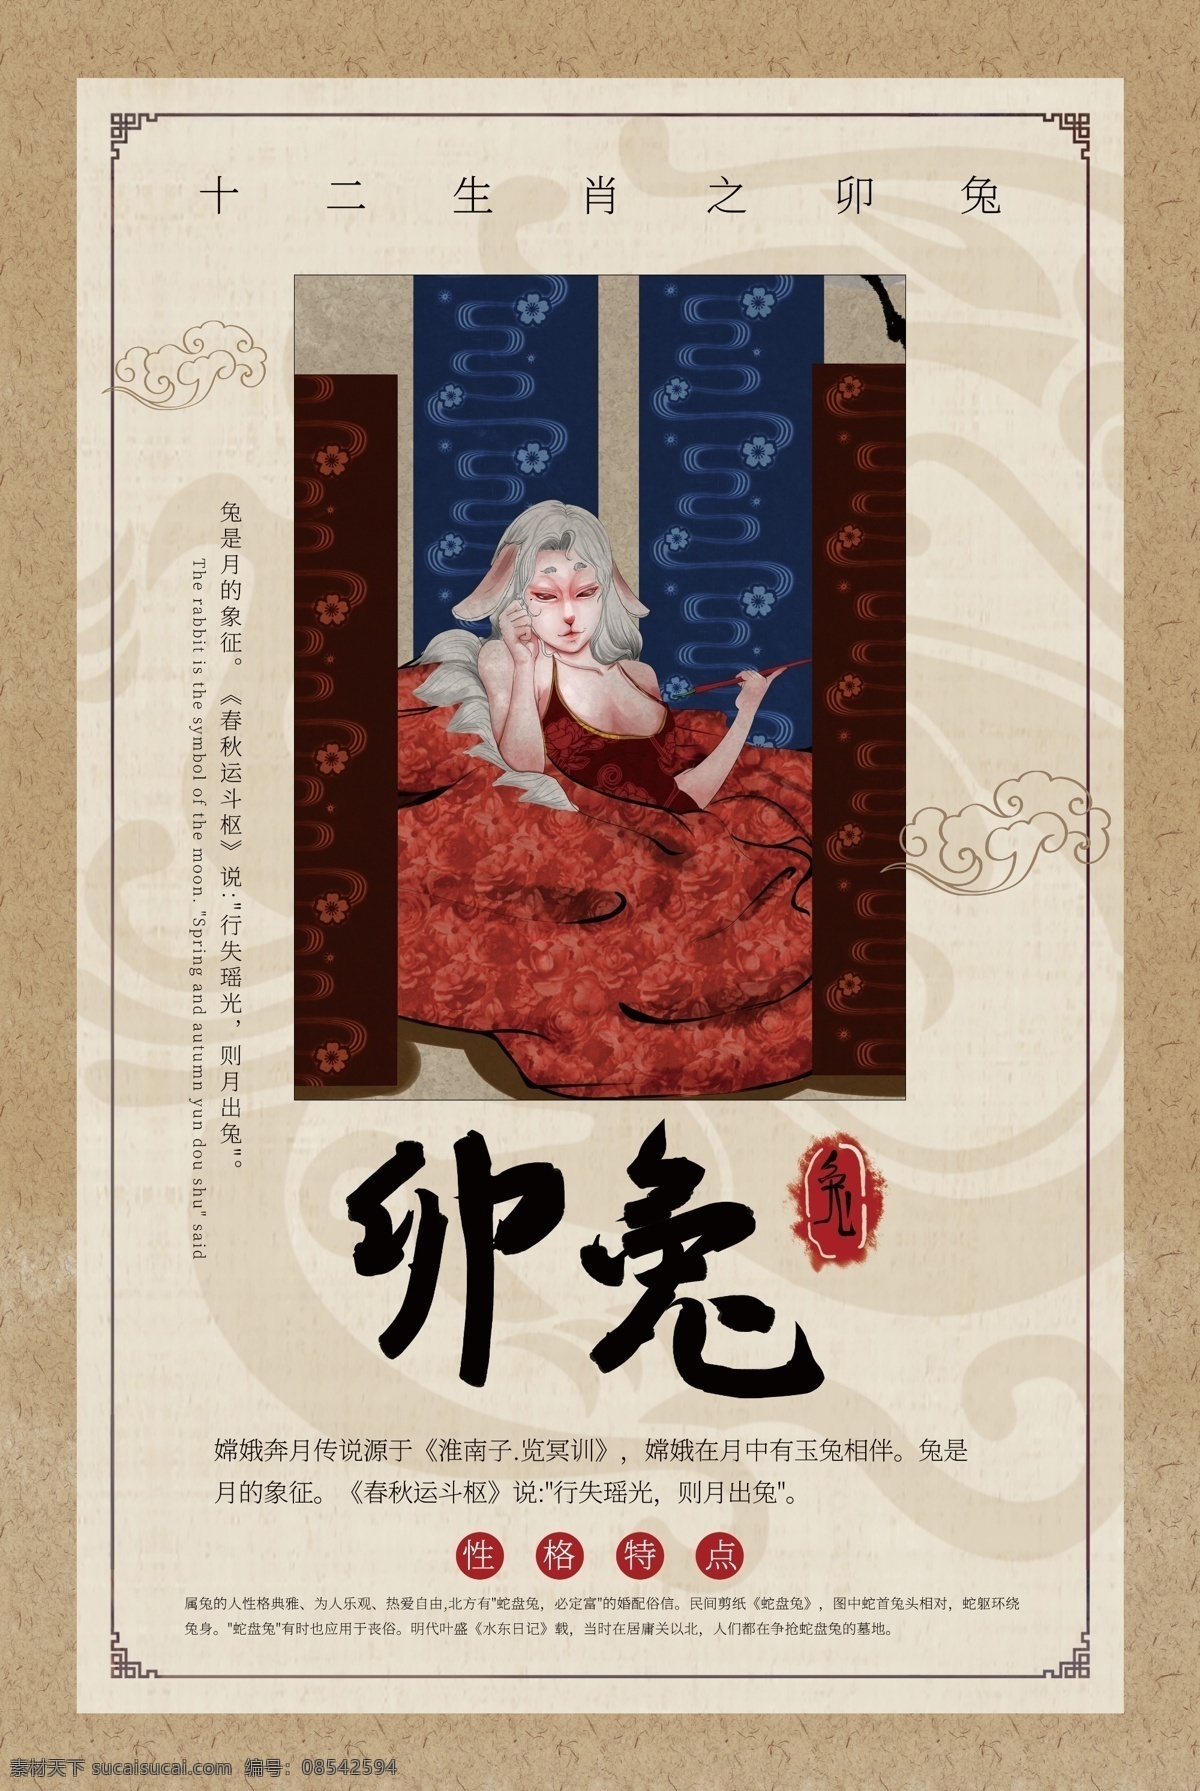 十二生肖 传统文化 公益 宣传海报 传统 文化 宣传 海报 社会